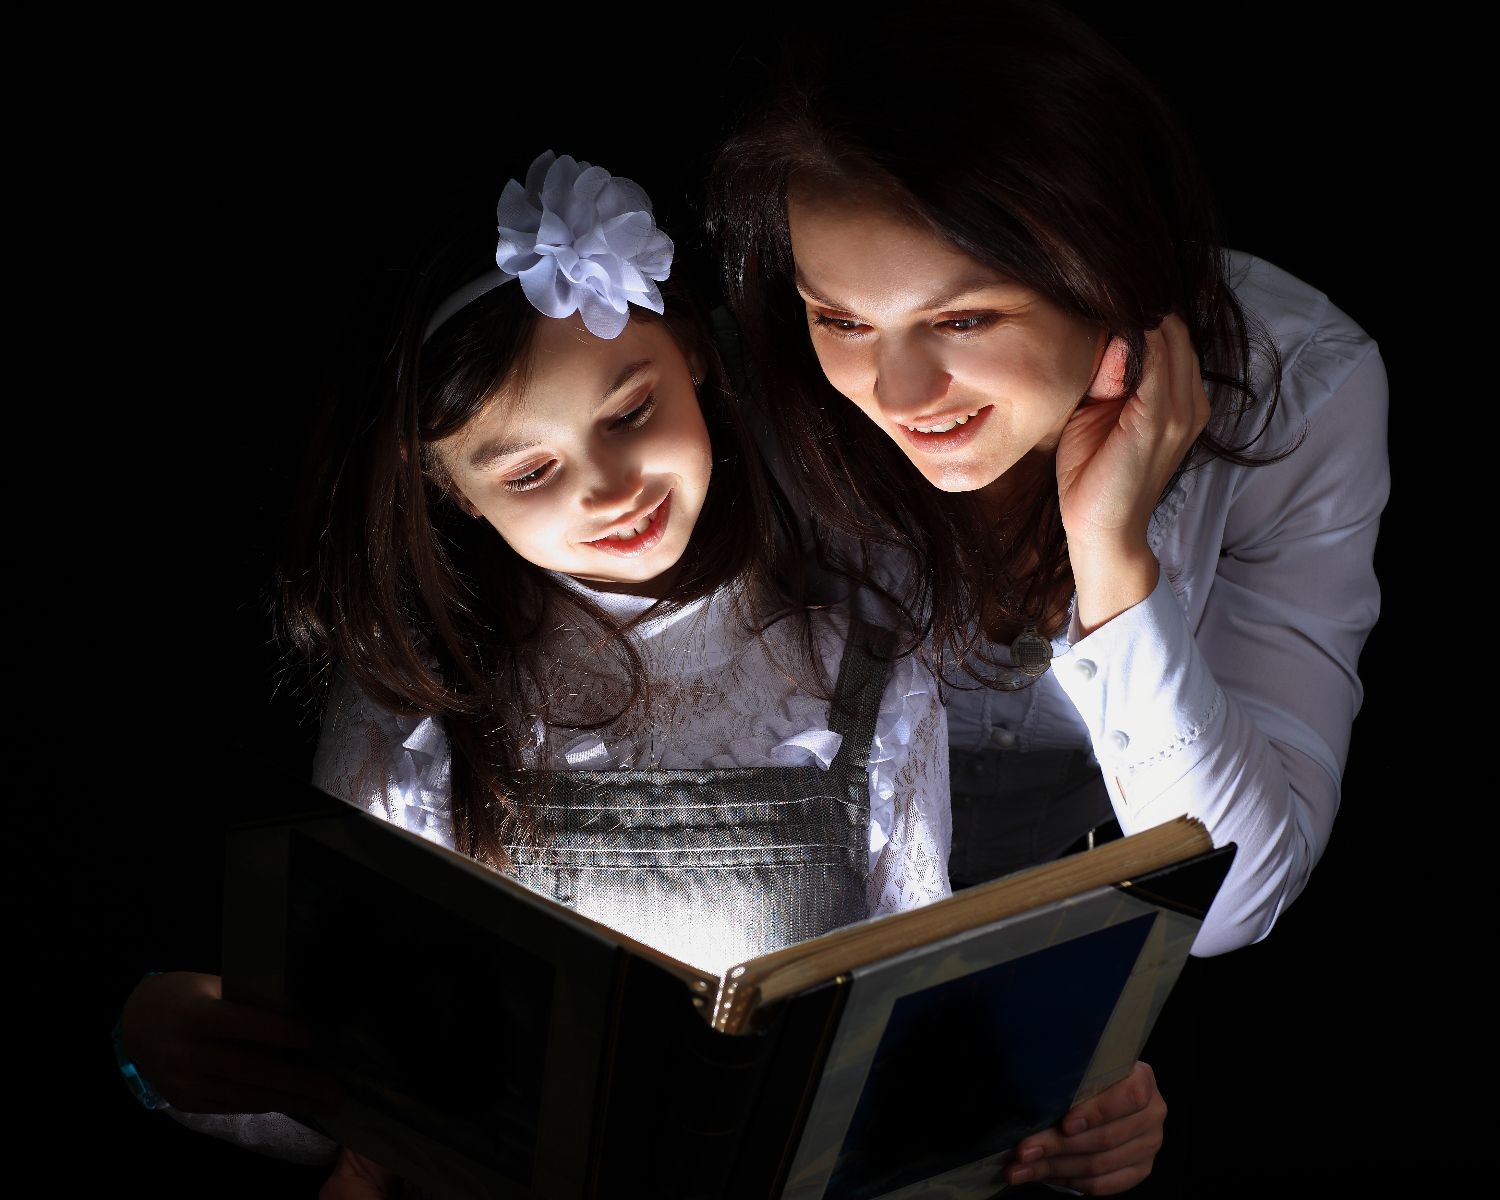 Madre e hia leyendo en un libro que emite una luz